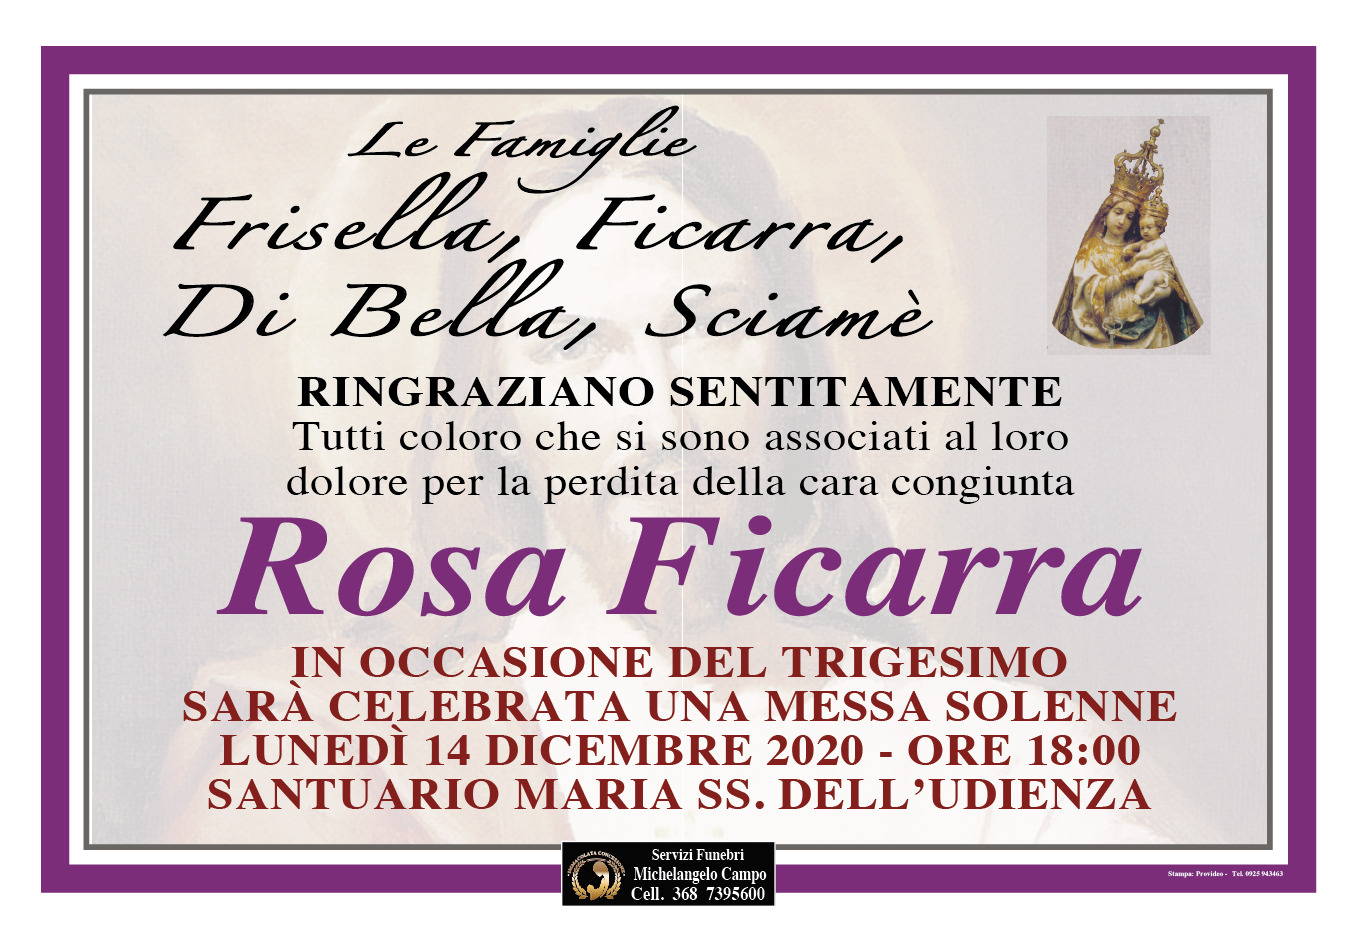 Rosa Ficarra